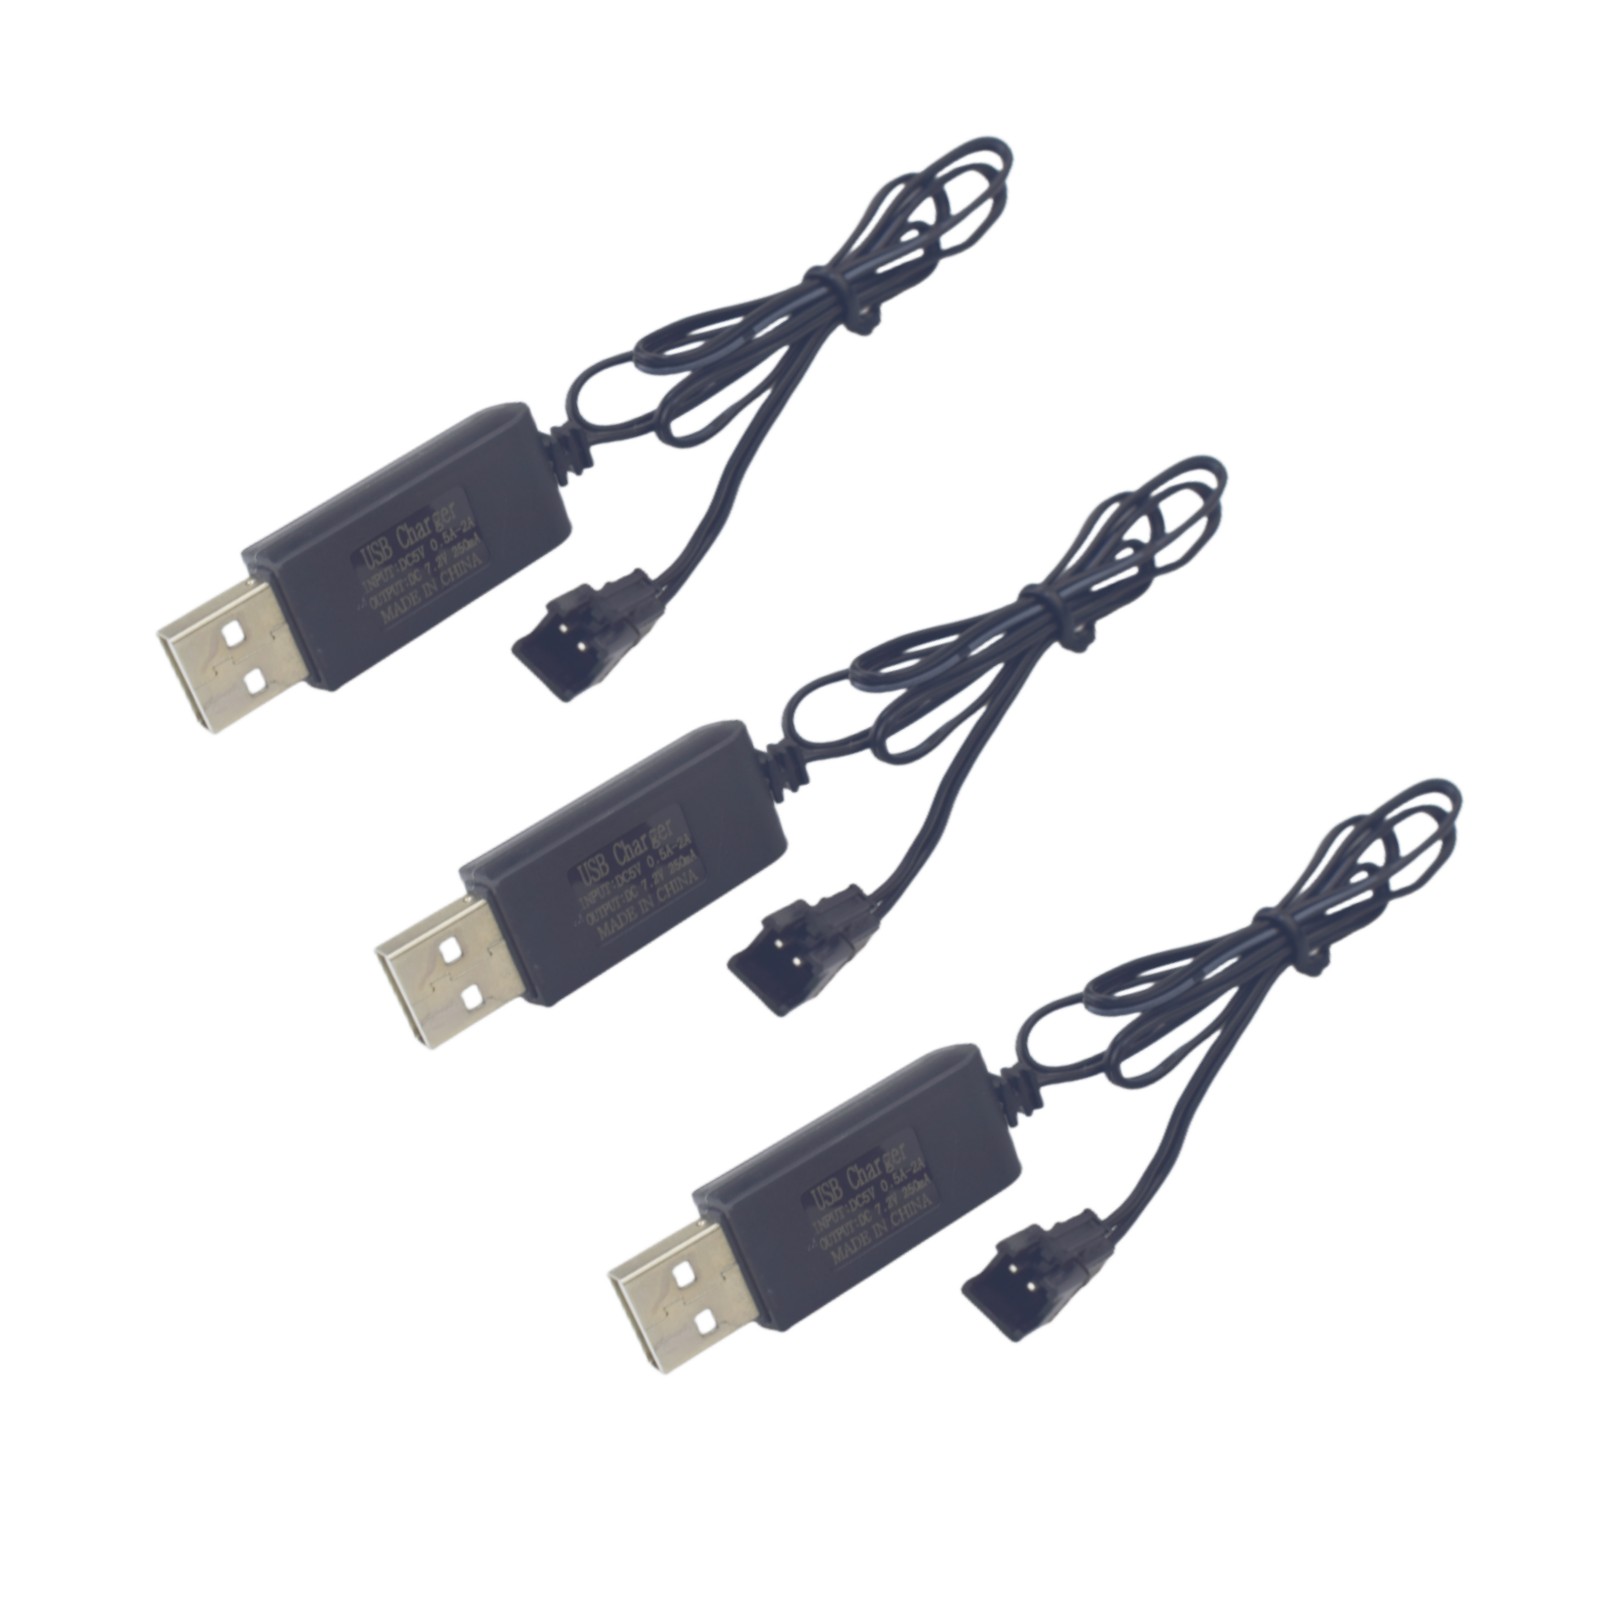 3pcs 7.2V SM-2P cắm USB sạc cáp cho Huina 1550 550 điều khiển từ xa máy xúc